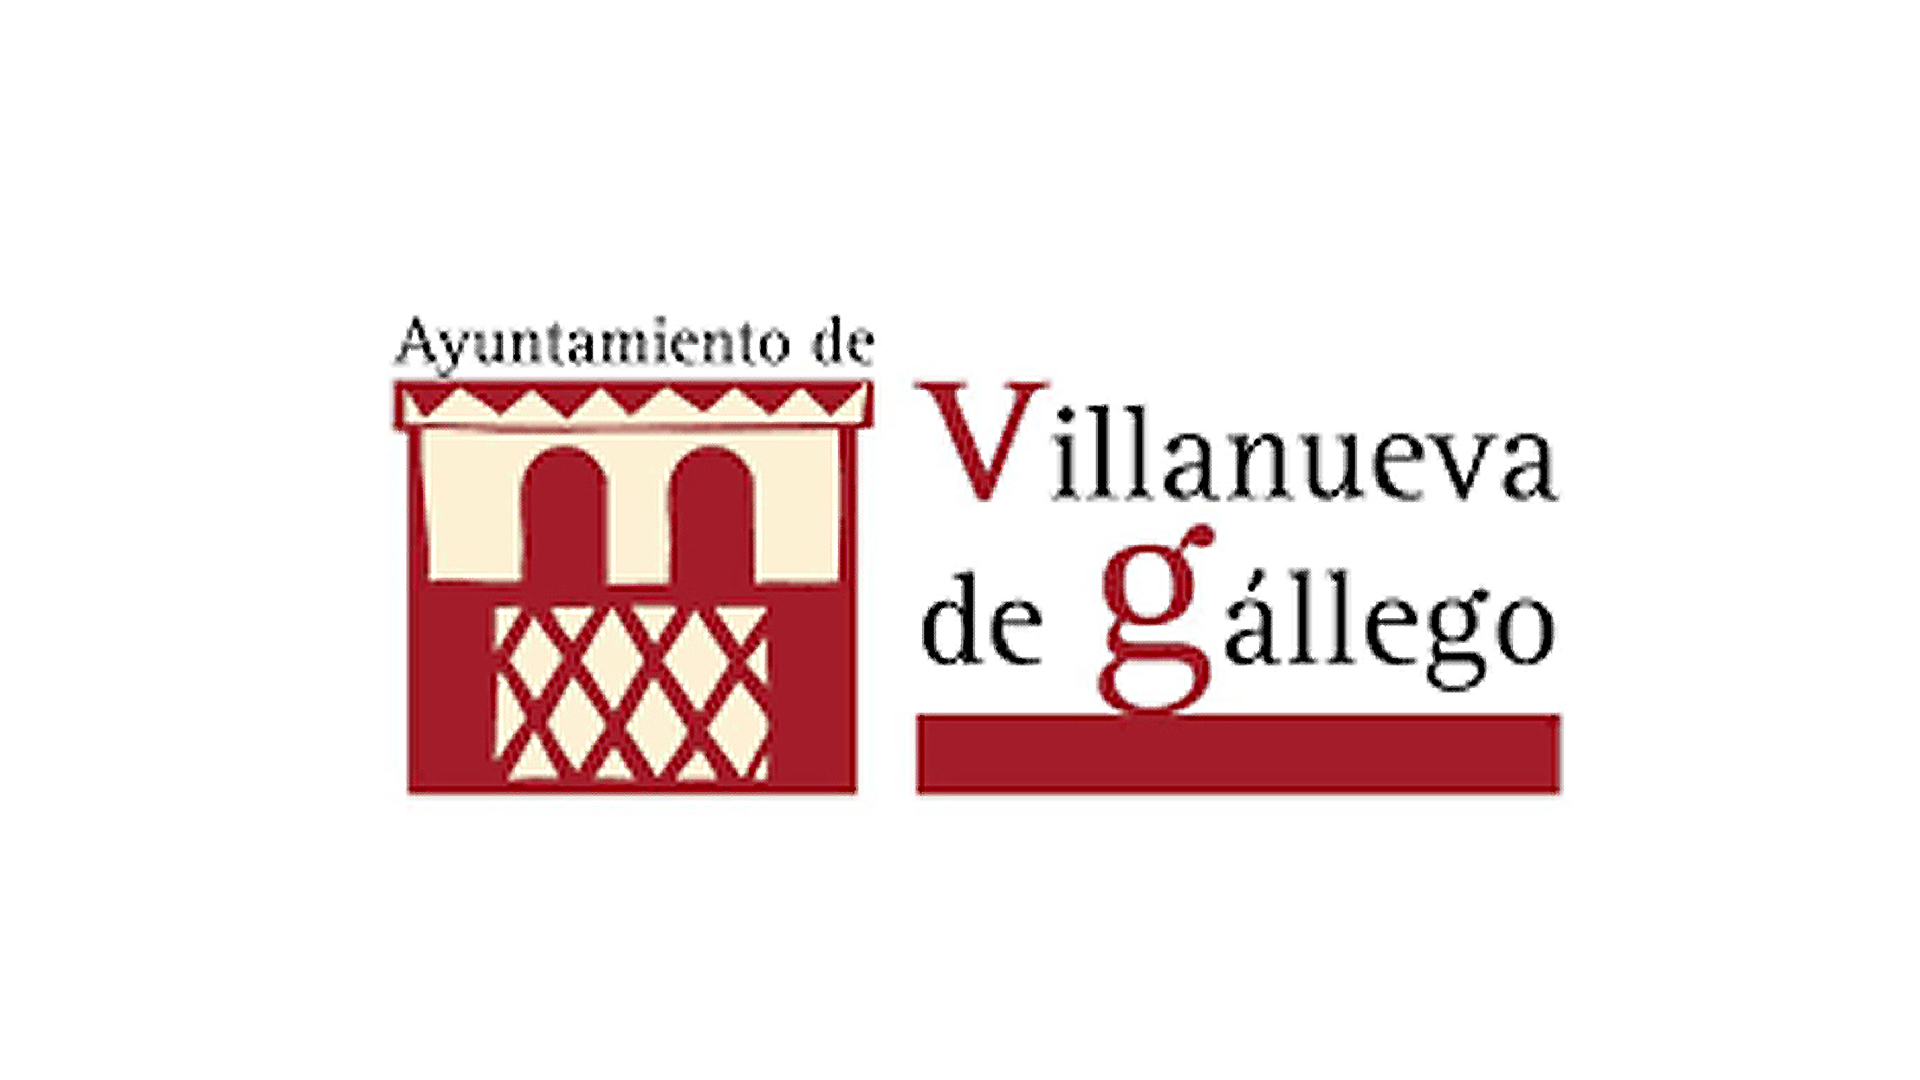 Ayuntamiento de Villanueva de Gállego - Clientes de ESMAS Gestión Deportiva